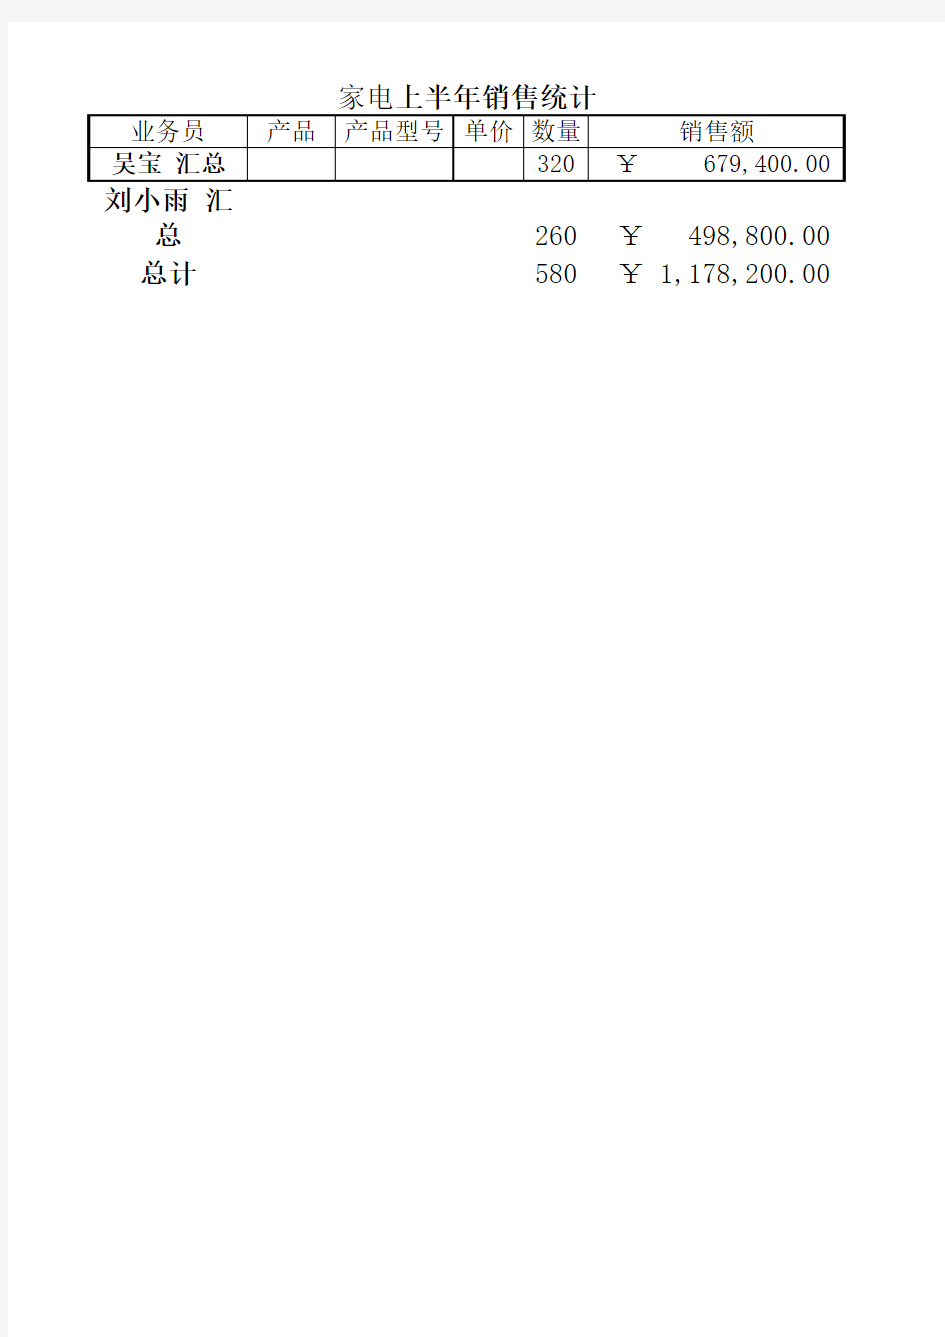 数据处理Excel 2010(实验)商品销售统计表(分类汇总)